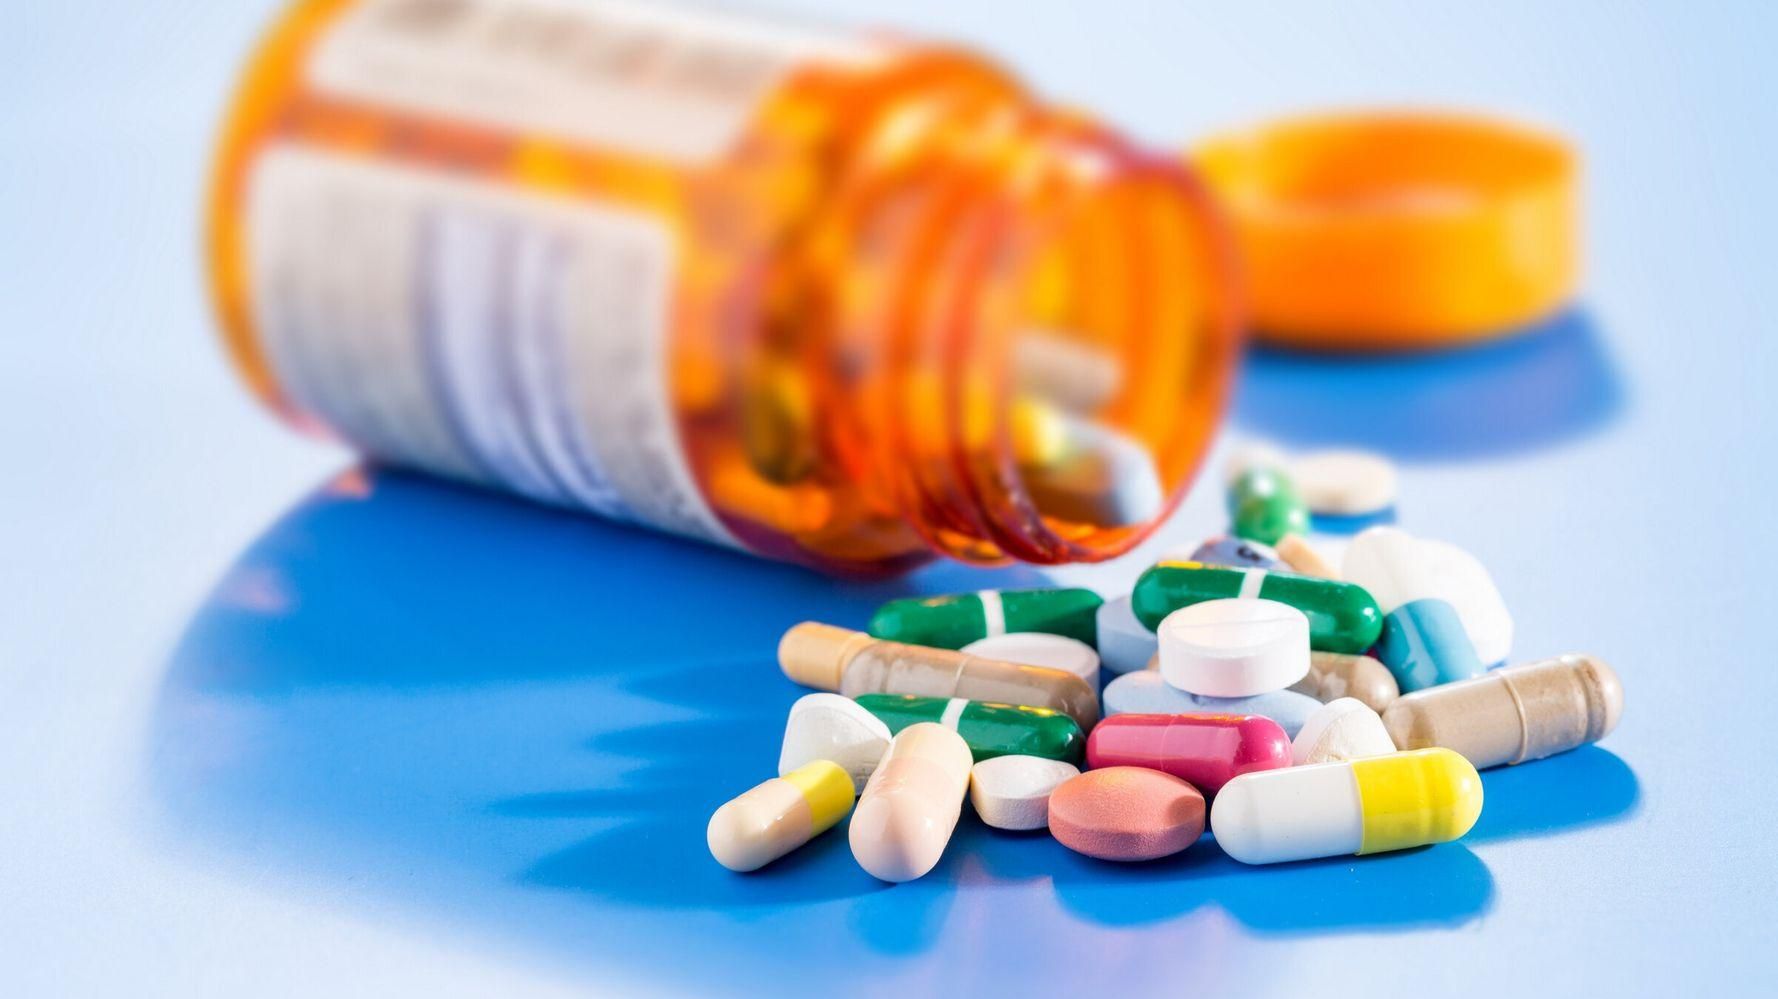 Бесплатная доставка лекарств и низкие цены: как работает новый украинский сервис